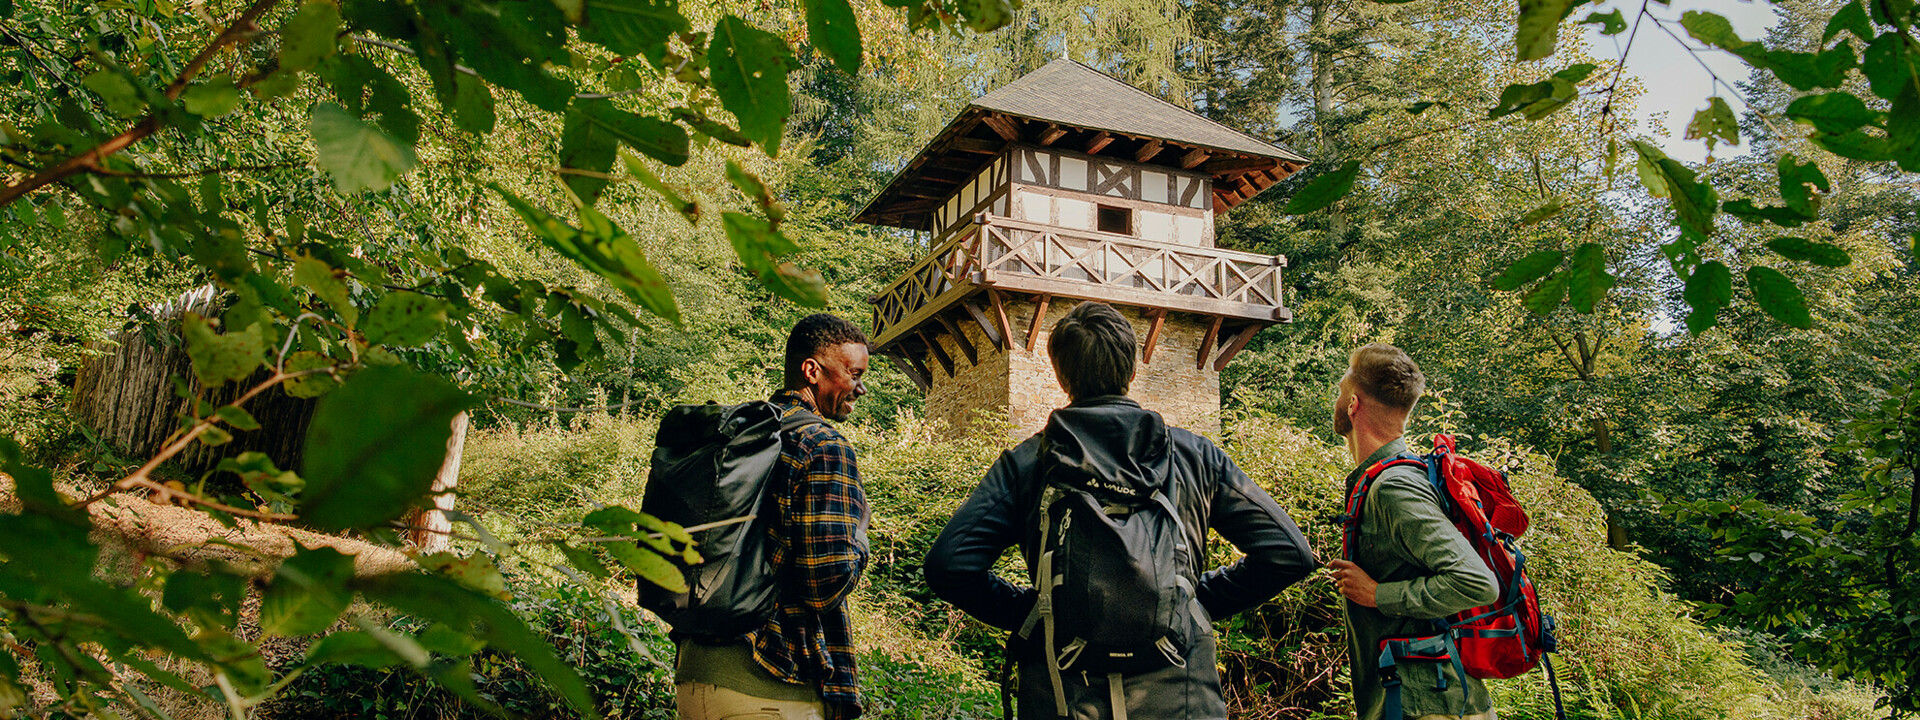 Wandergruppe steht vor einem Römerturm im Wald ©Koblenz-Touristik GmbH, Philip Bruederle